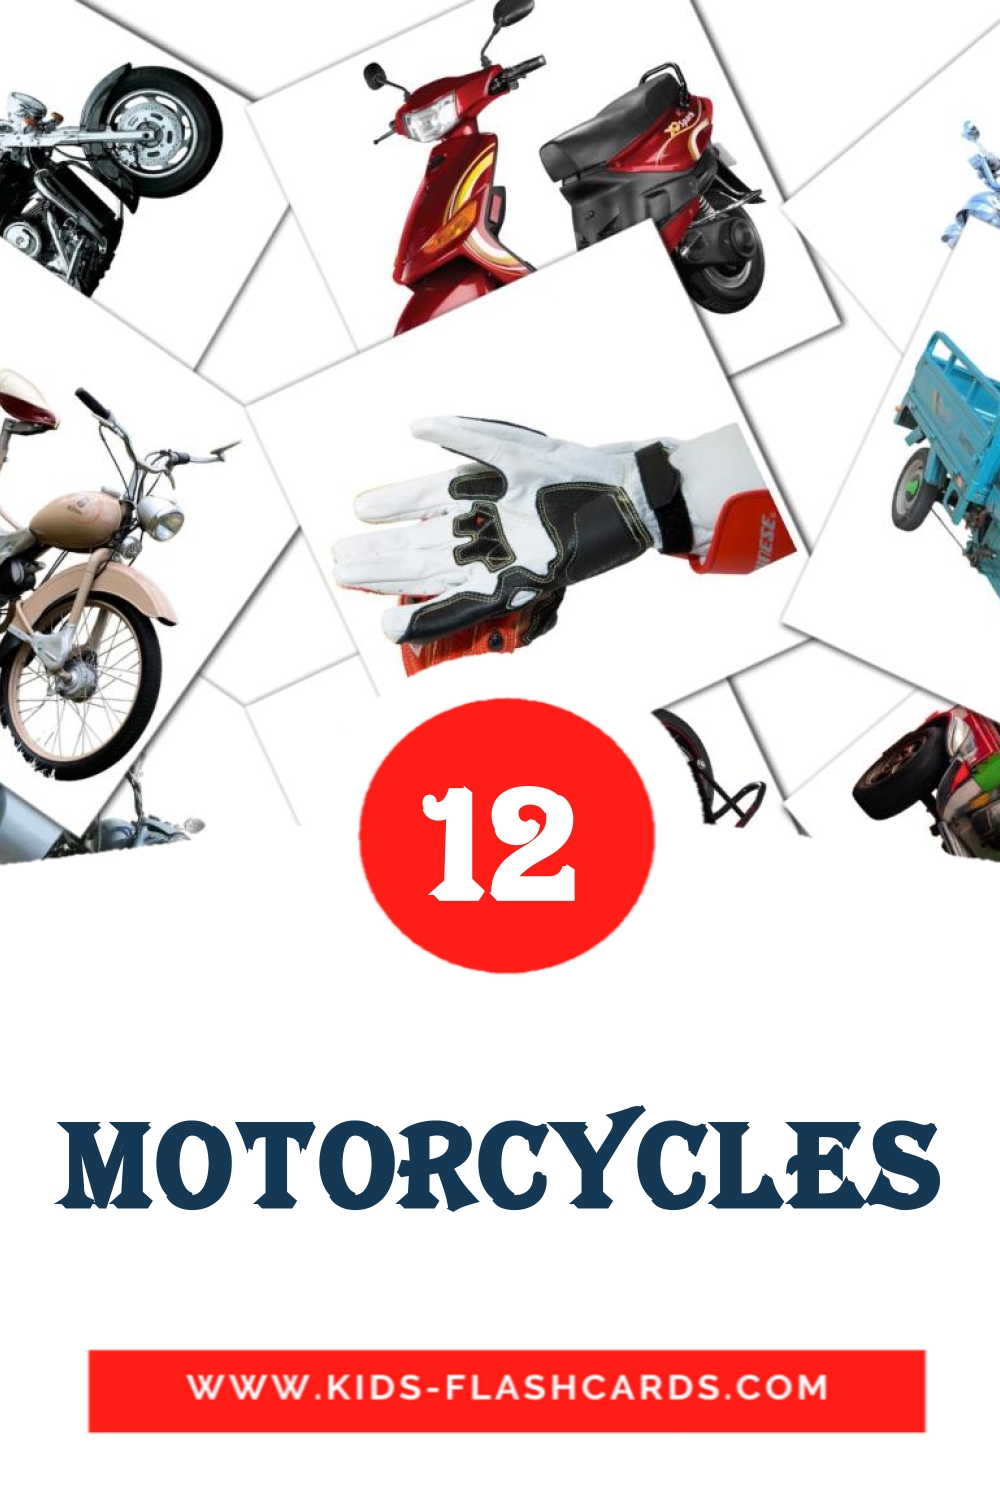 12 tarjetas didacticas de Motorcycles para el jardín de infancia en albanés